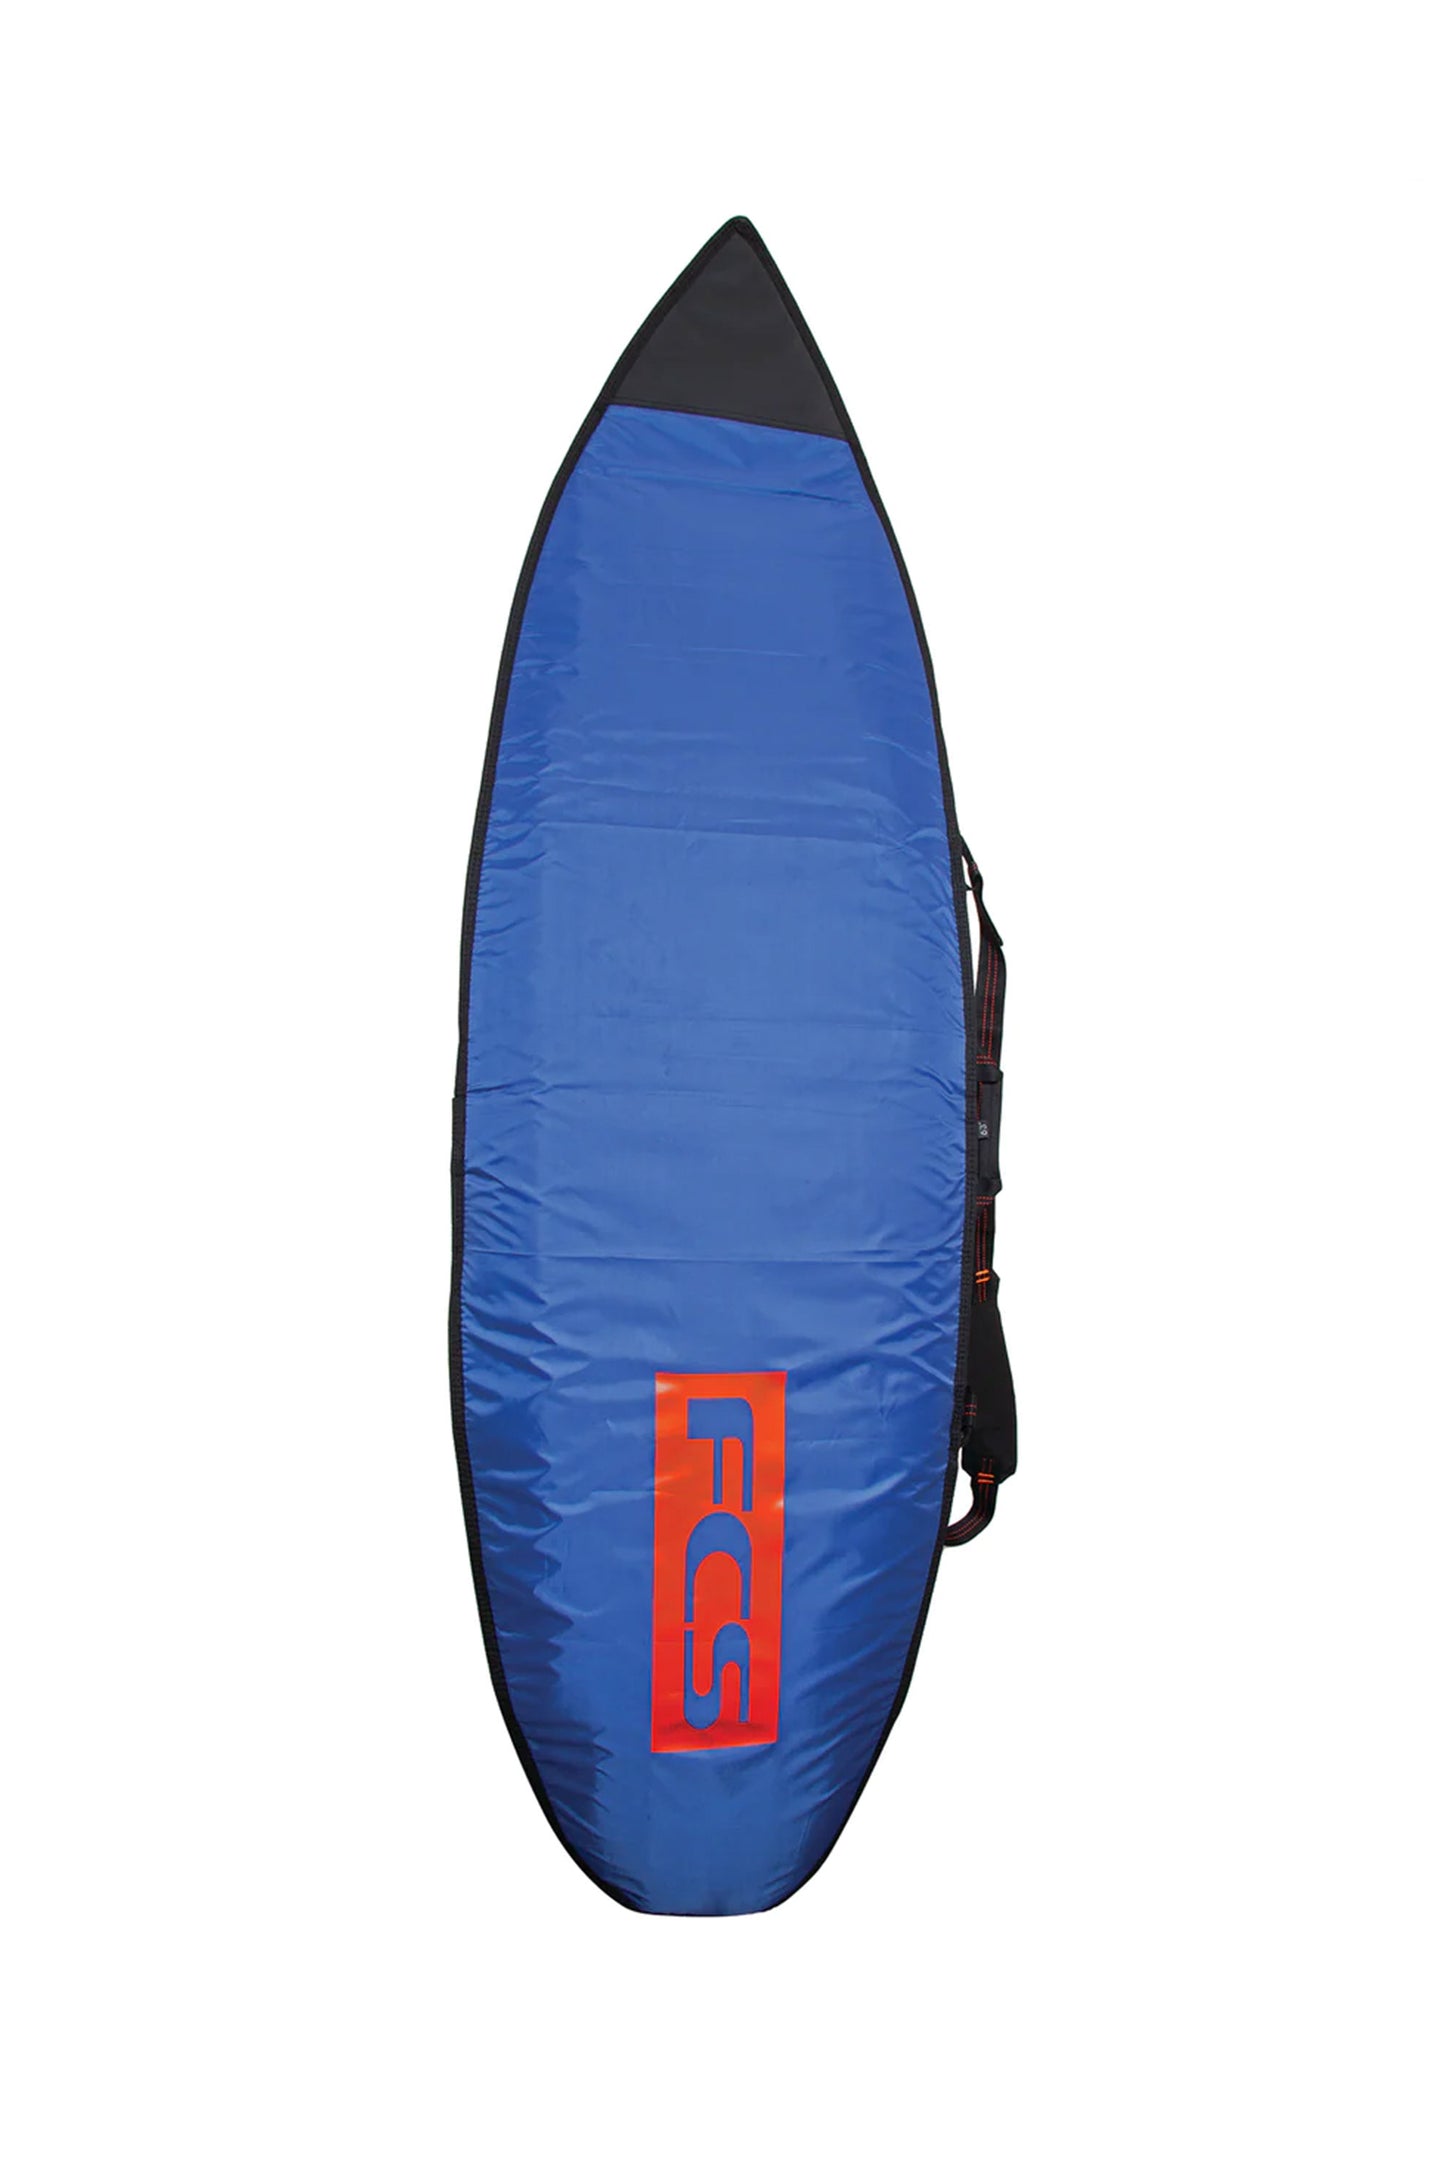 FCS - 6.3 CLASSIC FUN | Shop at PUKAS SURF SHOP